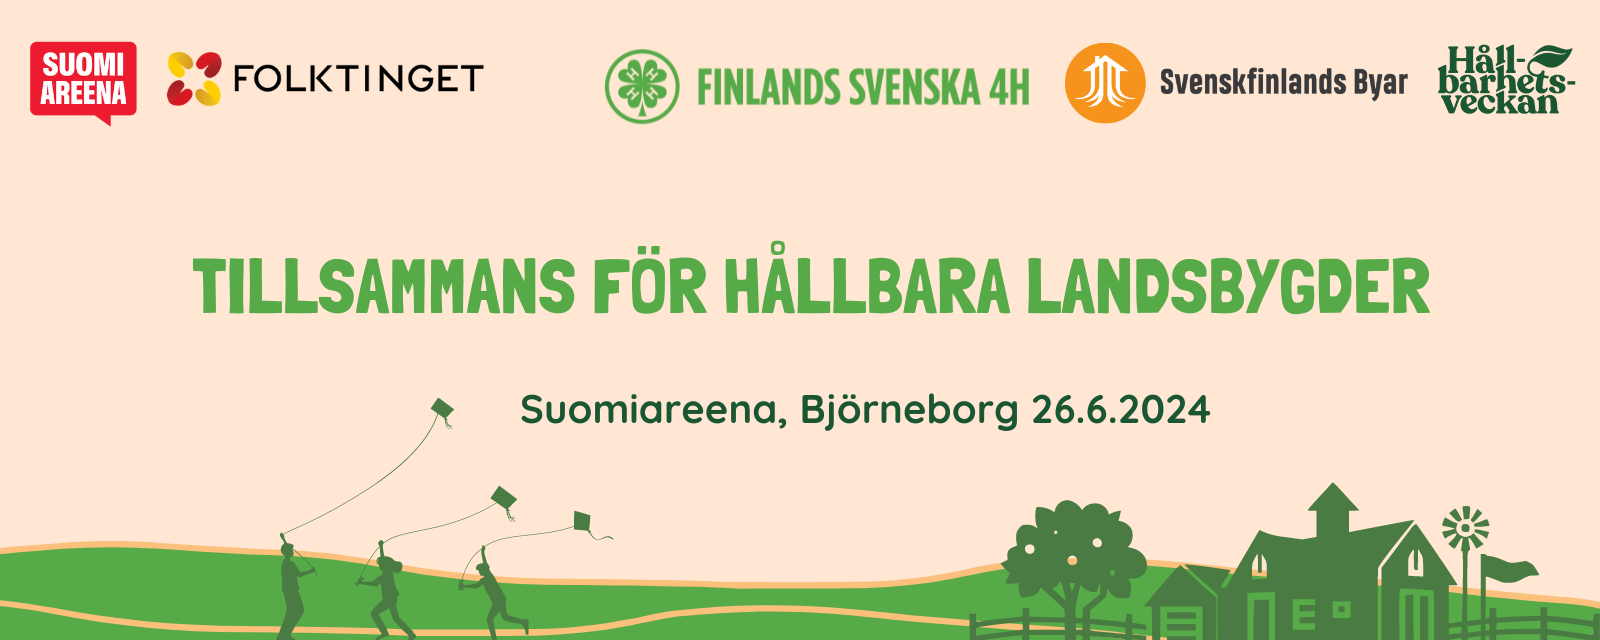 Tillsammans för ungas lärande och hållbara landsbygder på SuomiAreena 2024 featured image